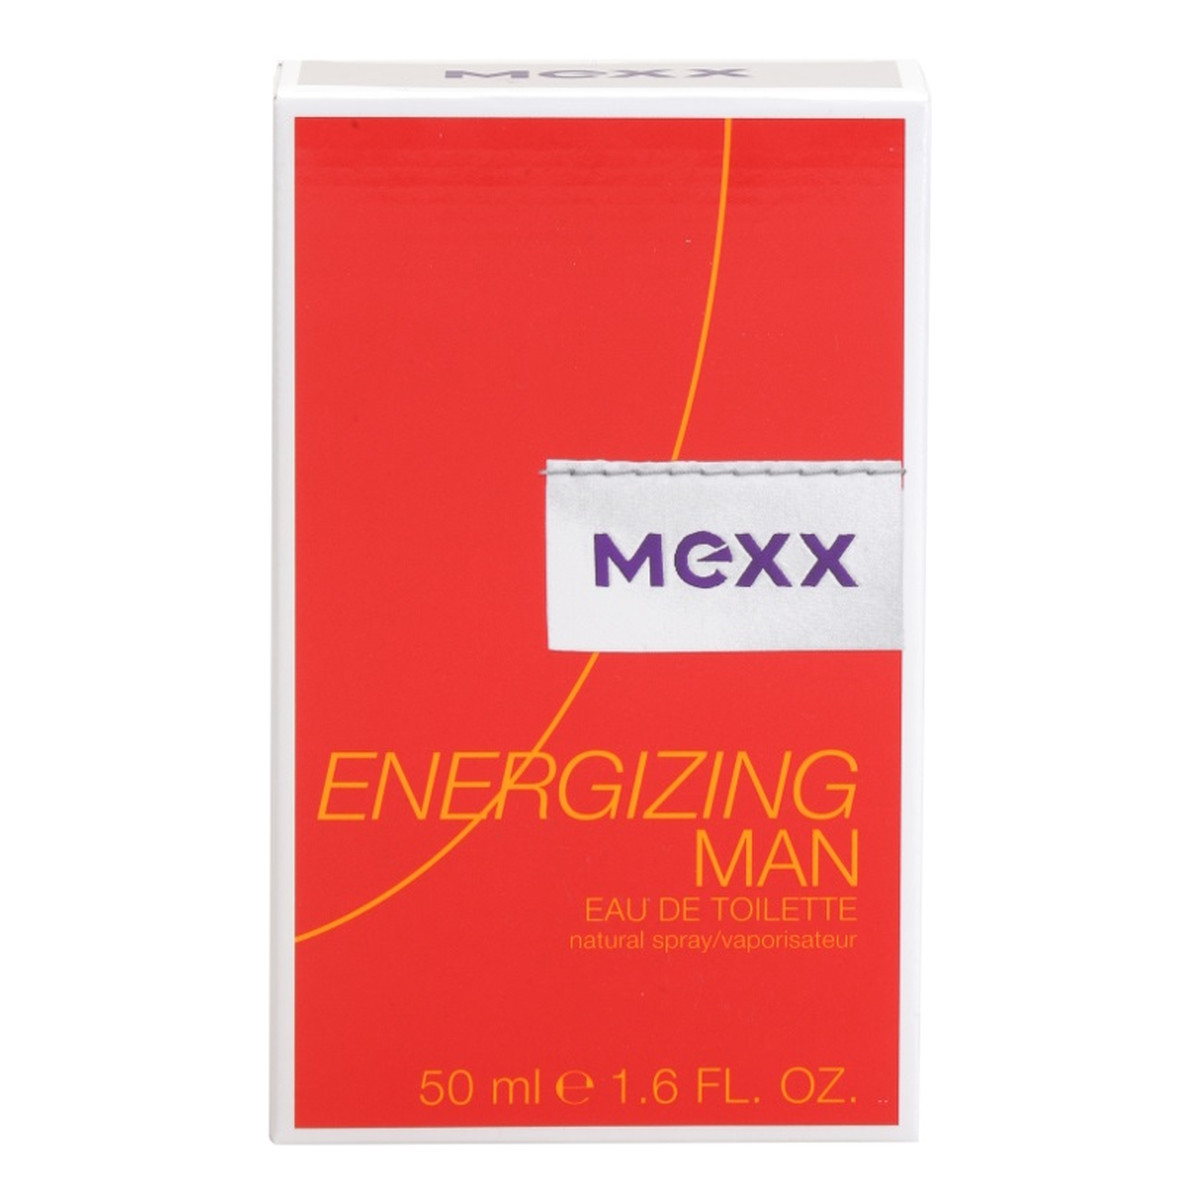 Mexx Energizing Man woda toaletowa dla mężczyzn 50ml